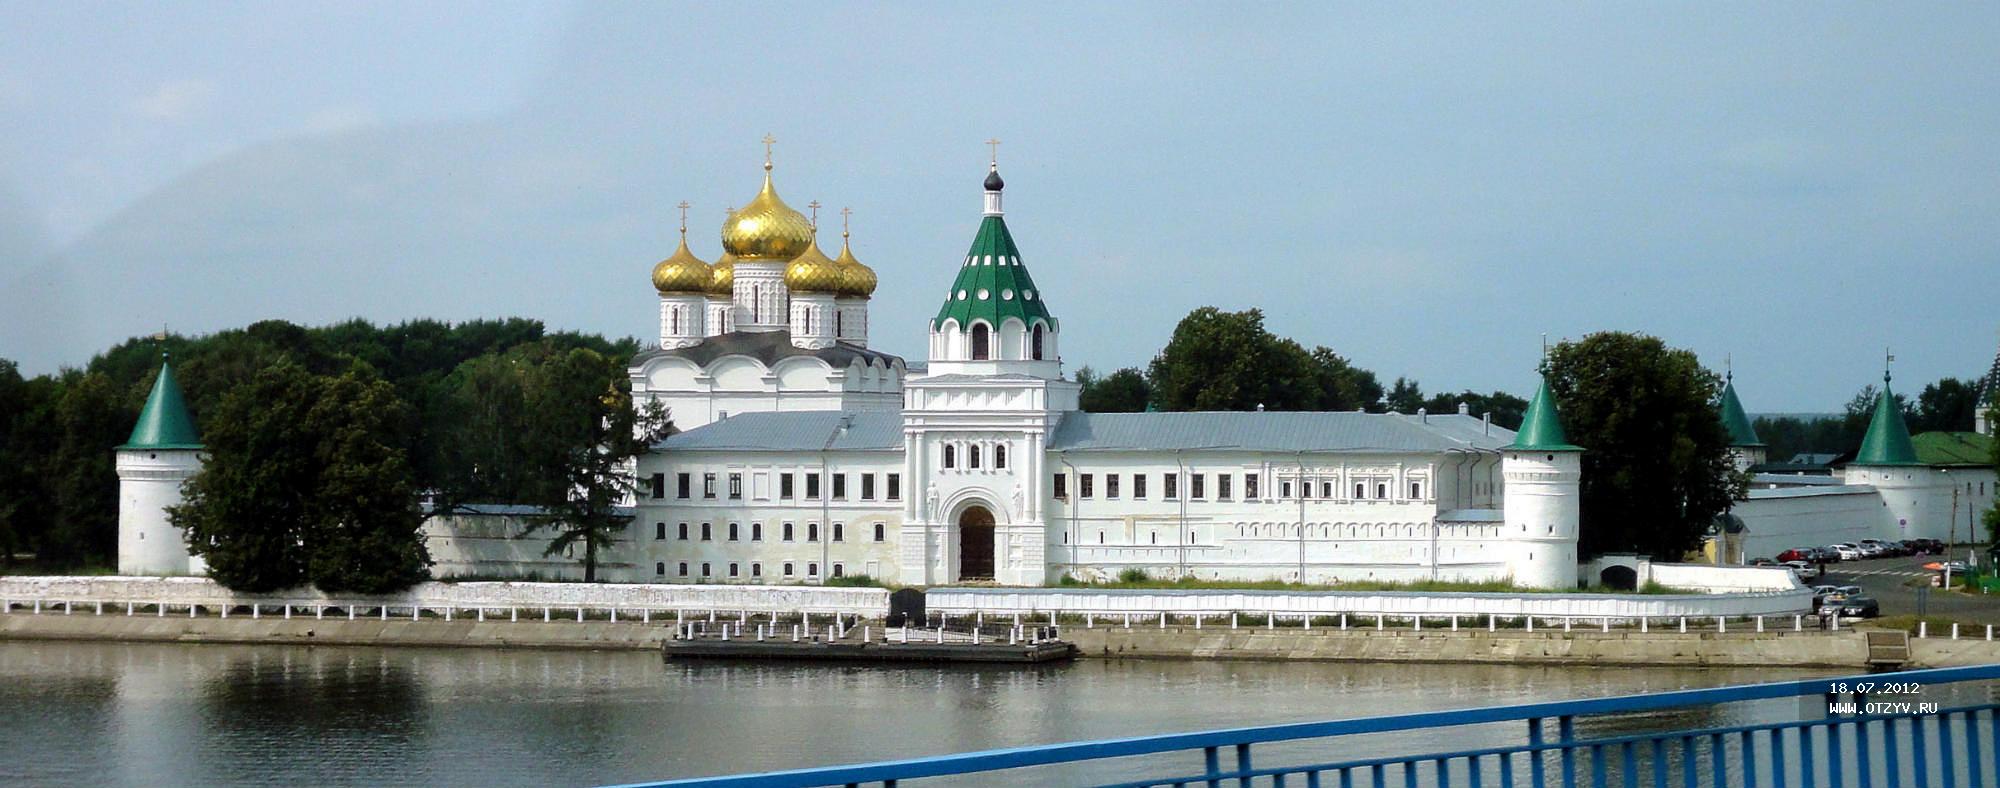 Ипатьевский монастырь Кострома панорама